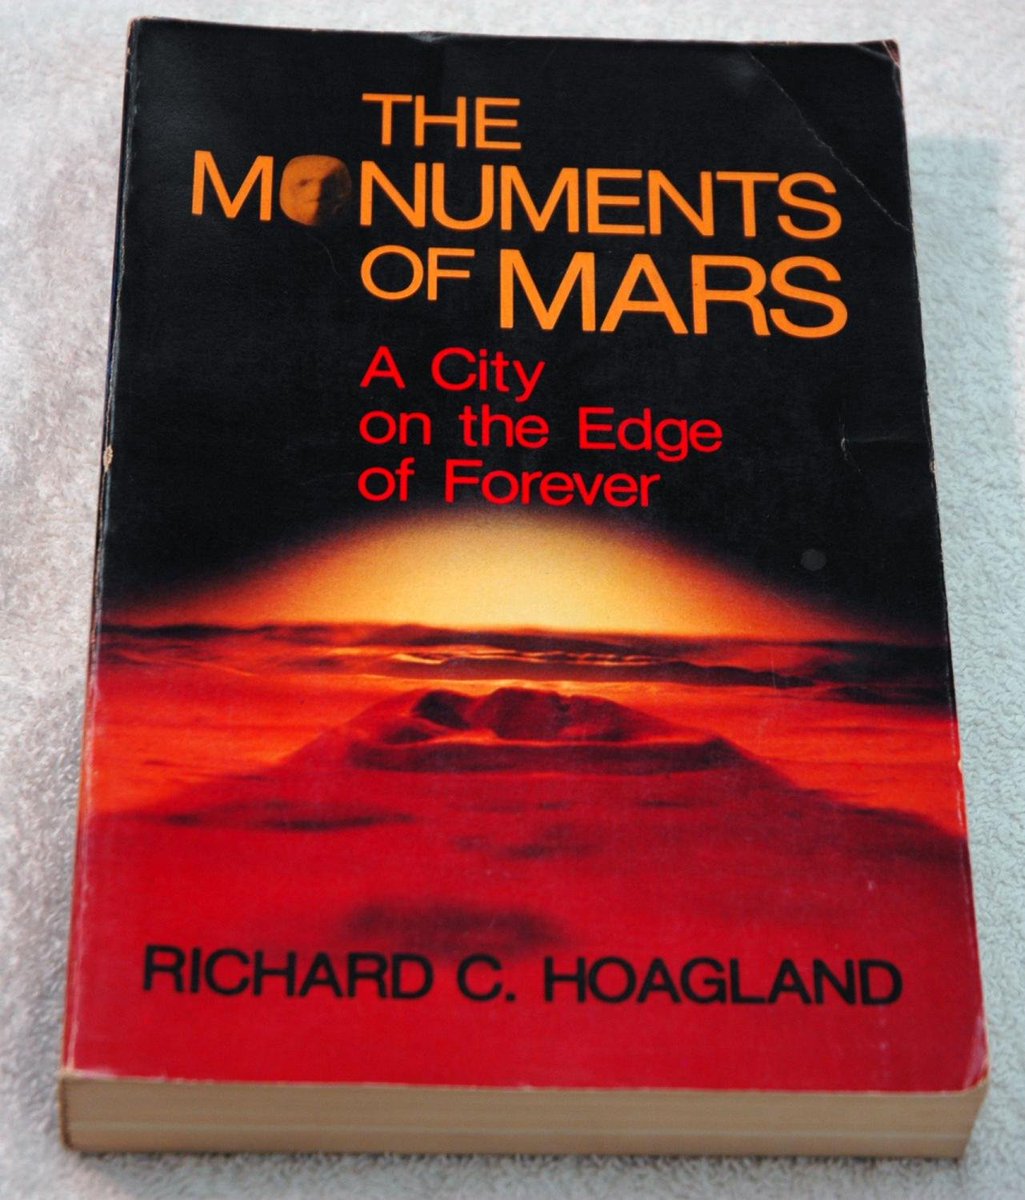 Bon, en fait il y a eu pleins de théories farfelues, comme quoi notamment ce serait un monument dans une ville sur Mars...(conseil, pour vous instruire, ne lisez pas ce livre!)